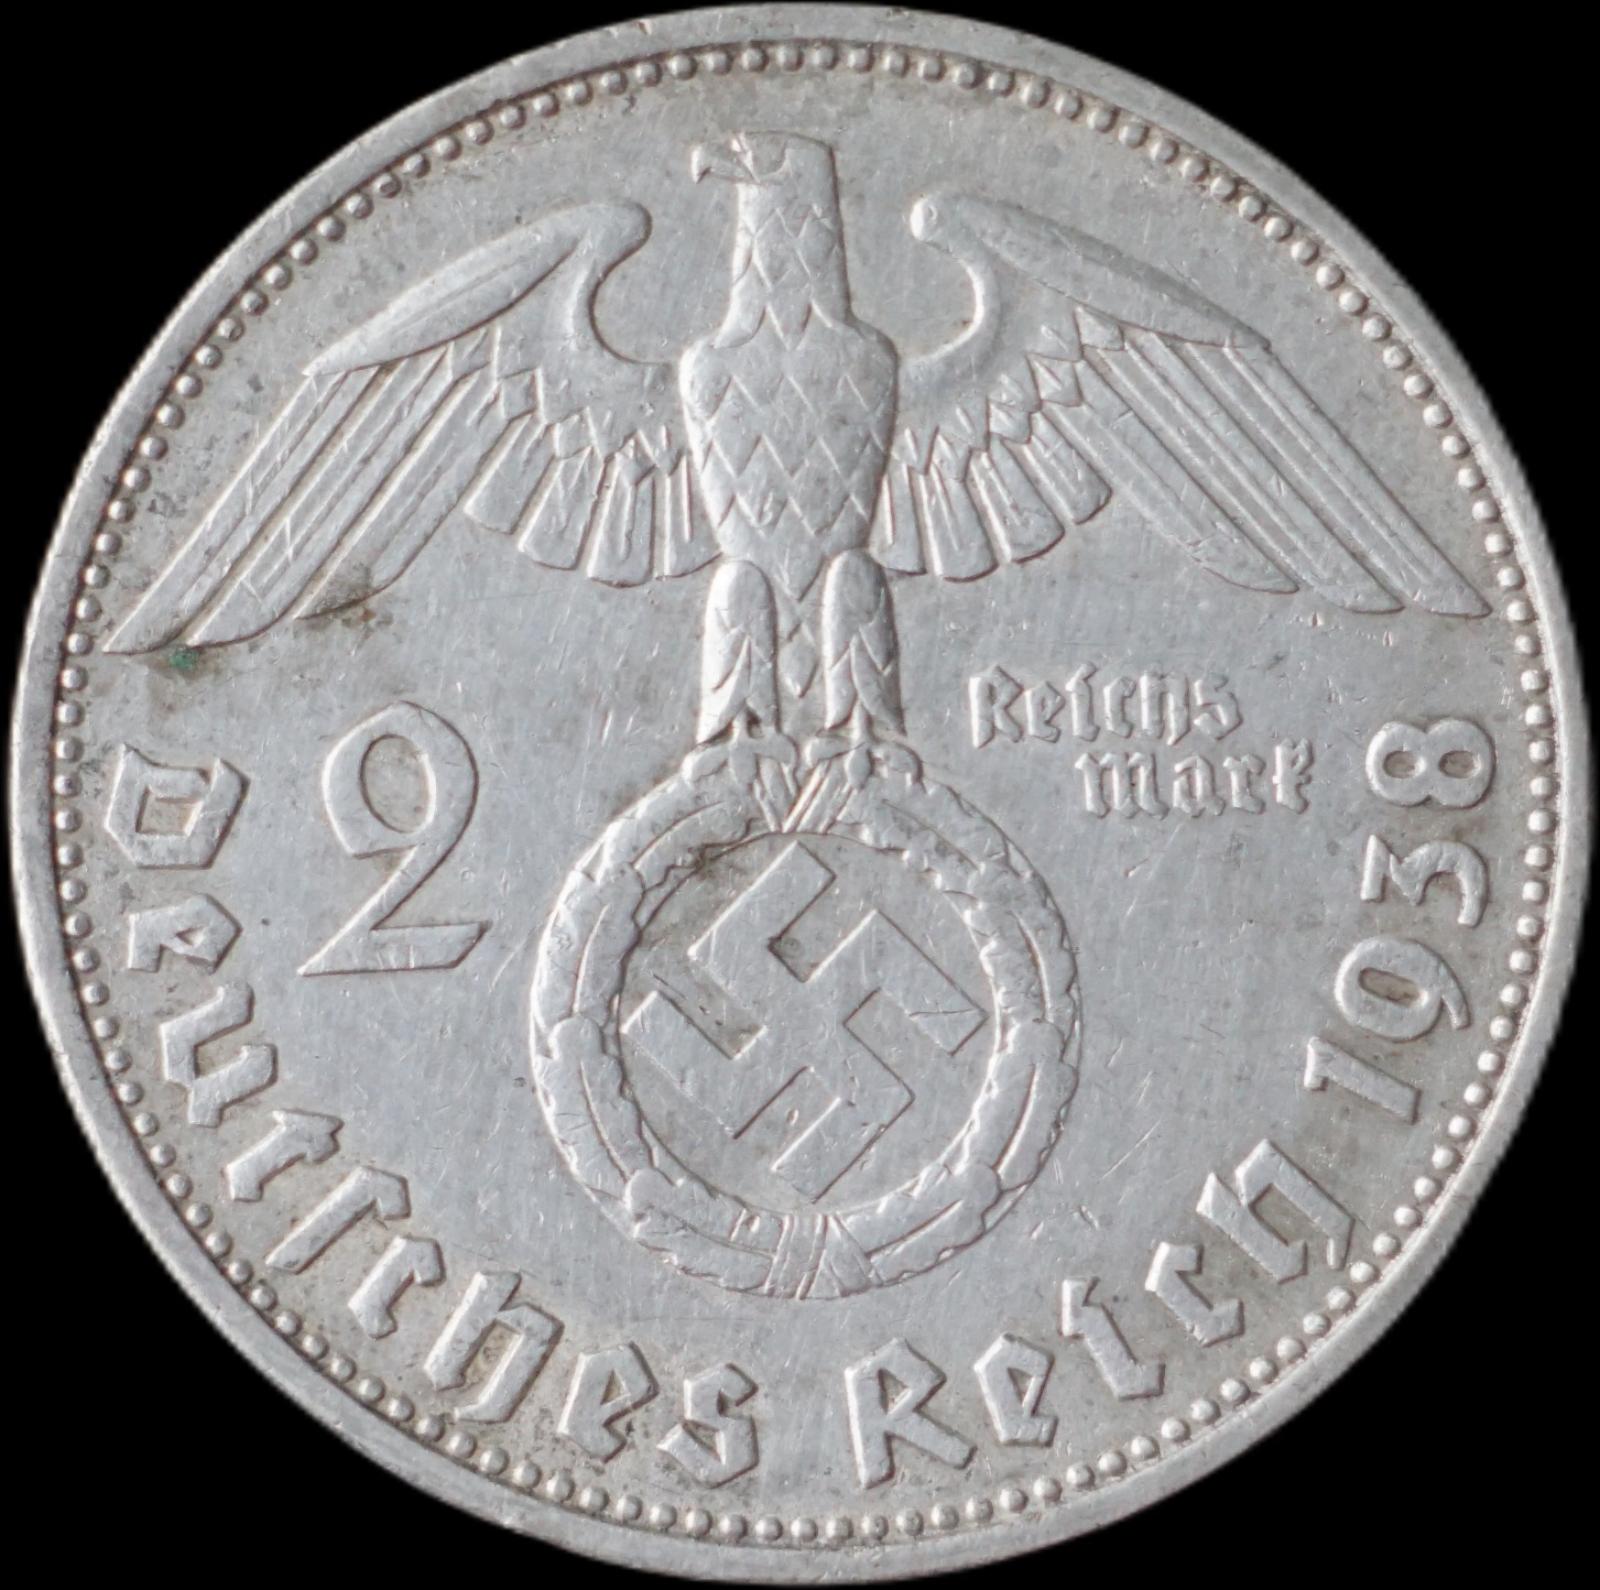 Nemecko - 2 Marka 1938 B Hindenburg - strieborná minca - Numizmatika